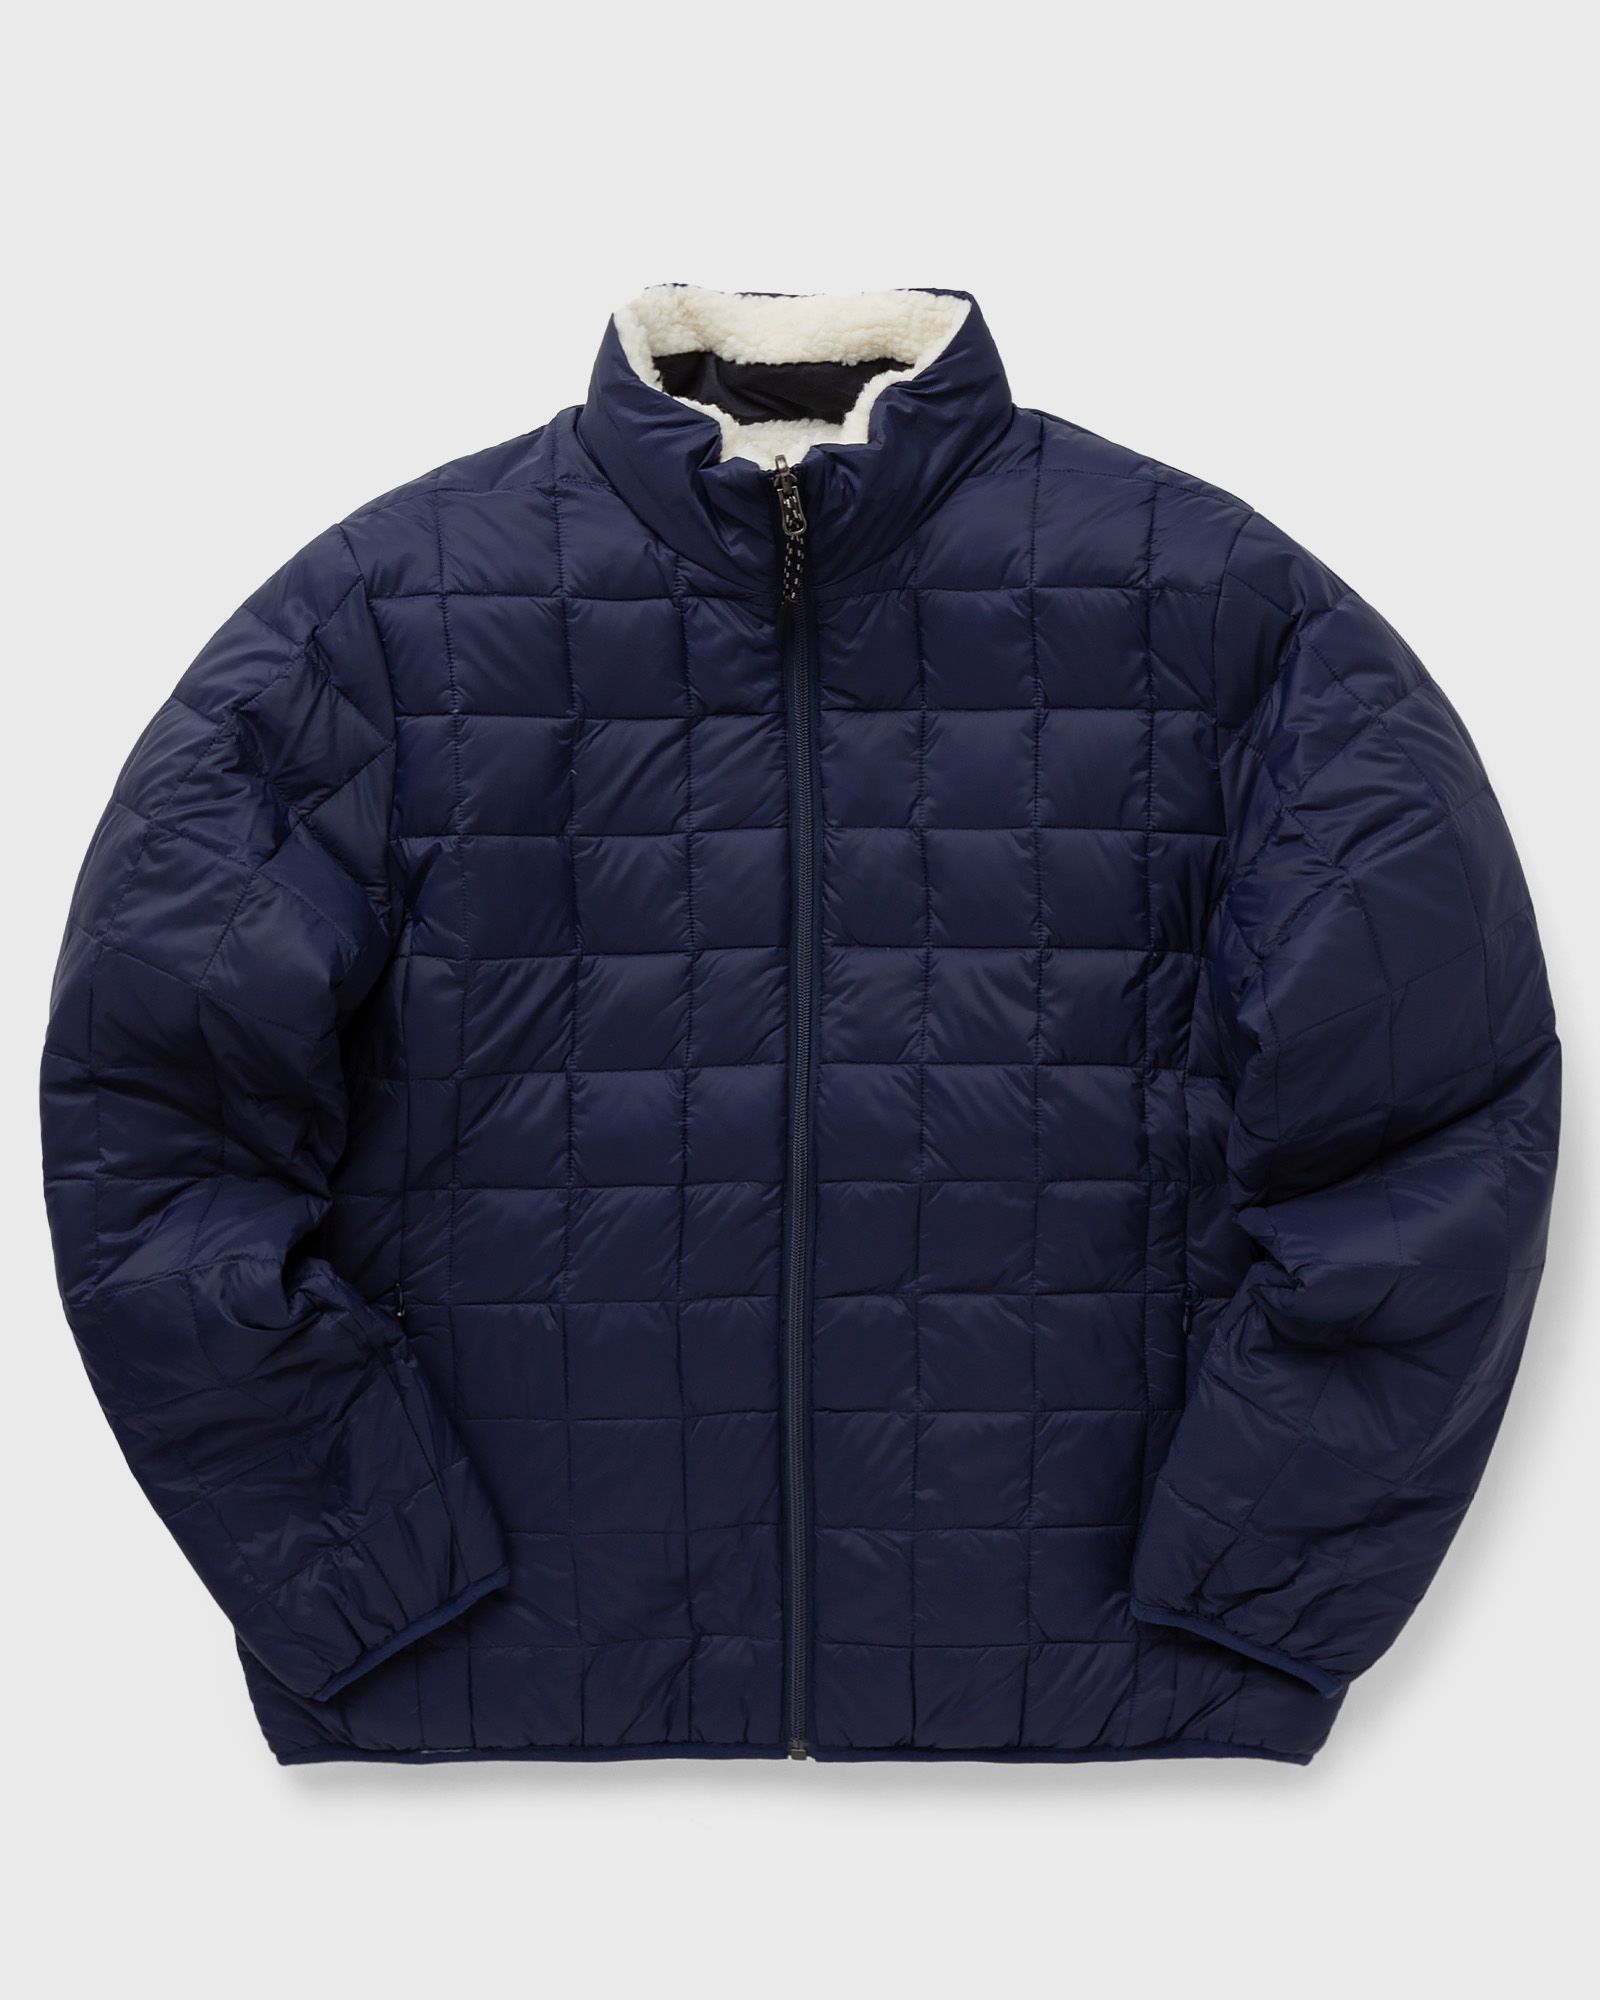 Taion - down x boa reversible jacket men windbreaker blue in größe:xxl